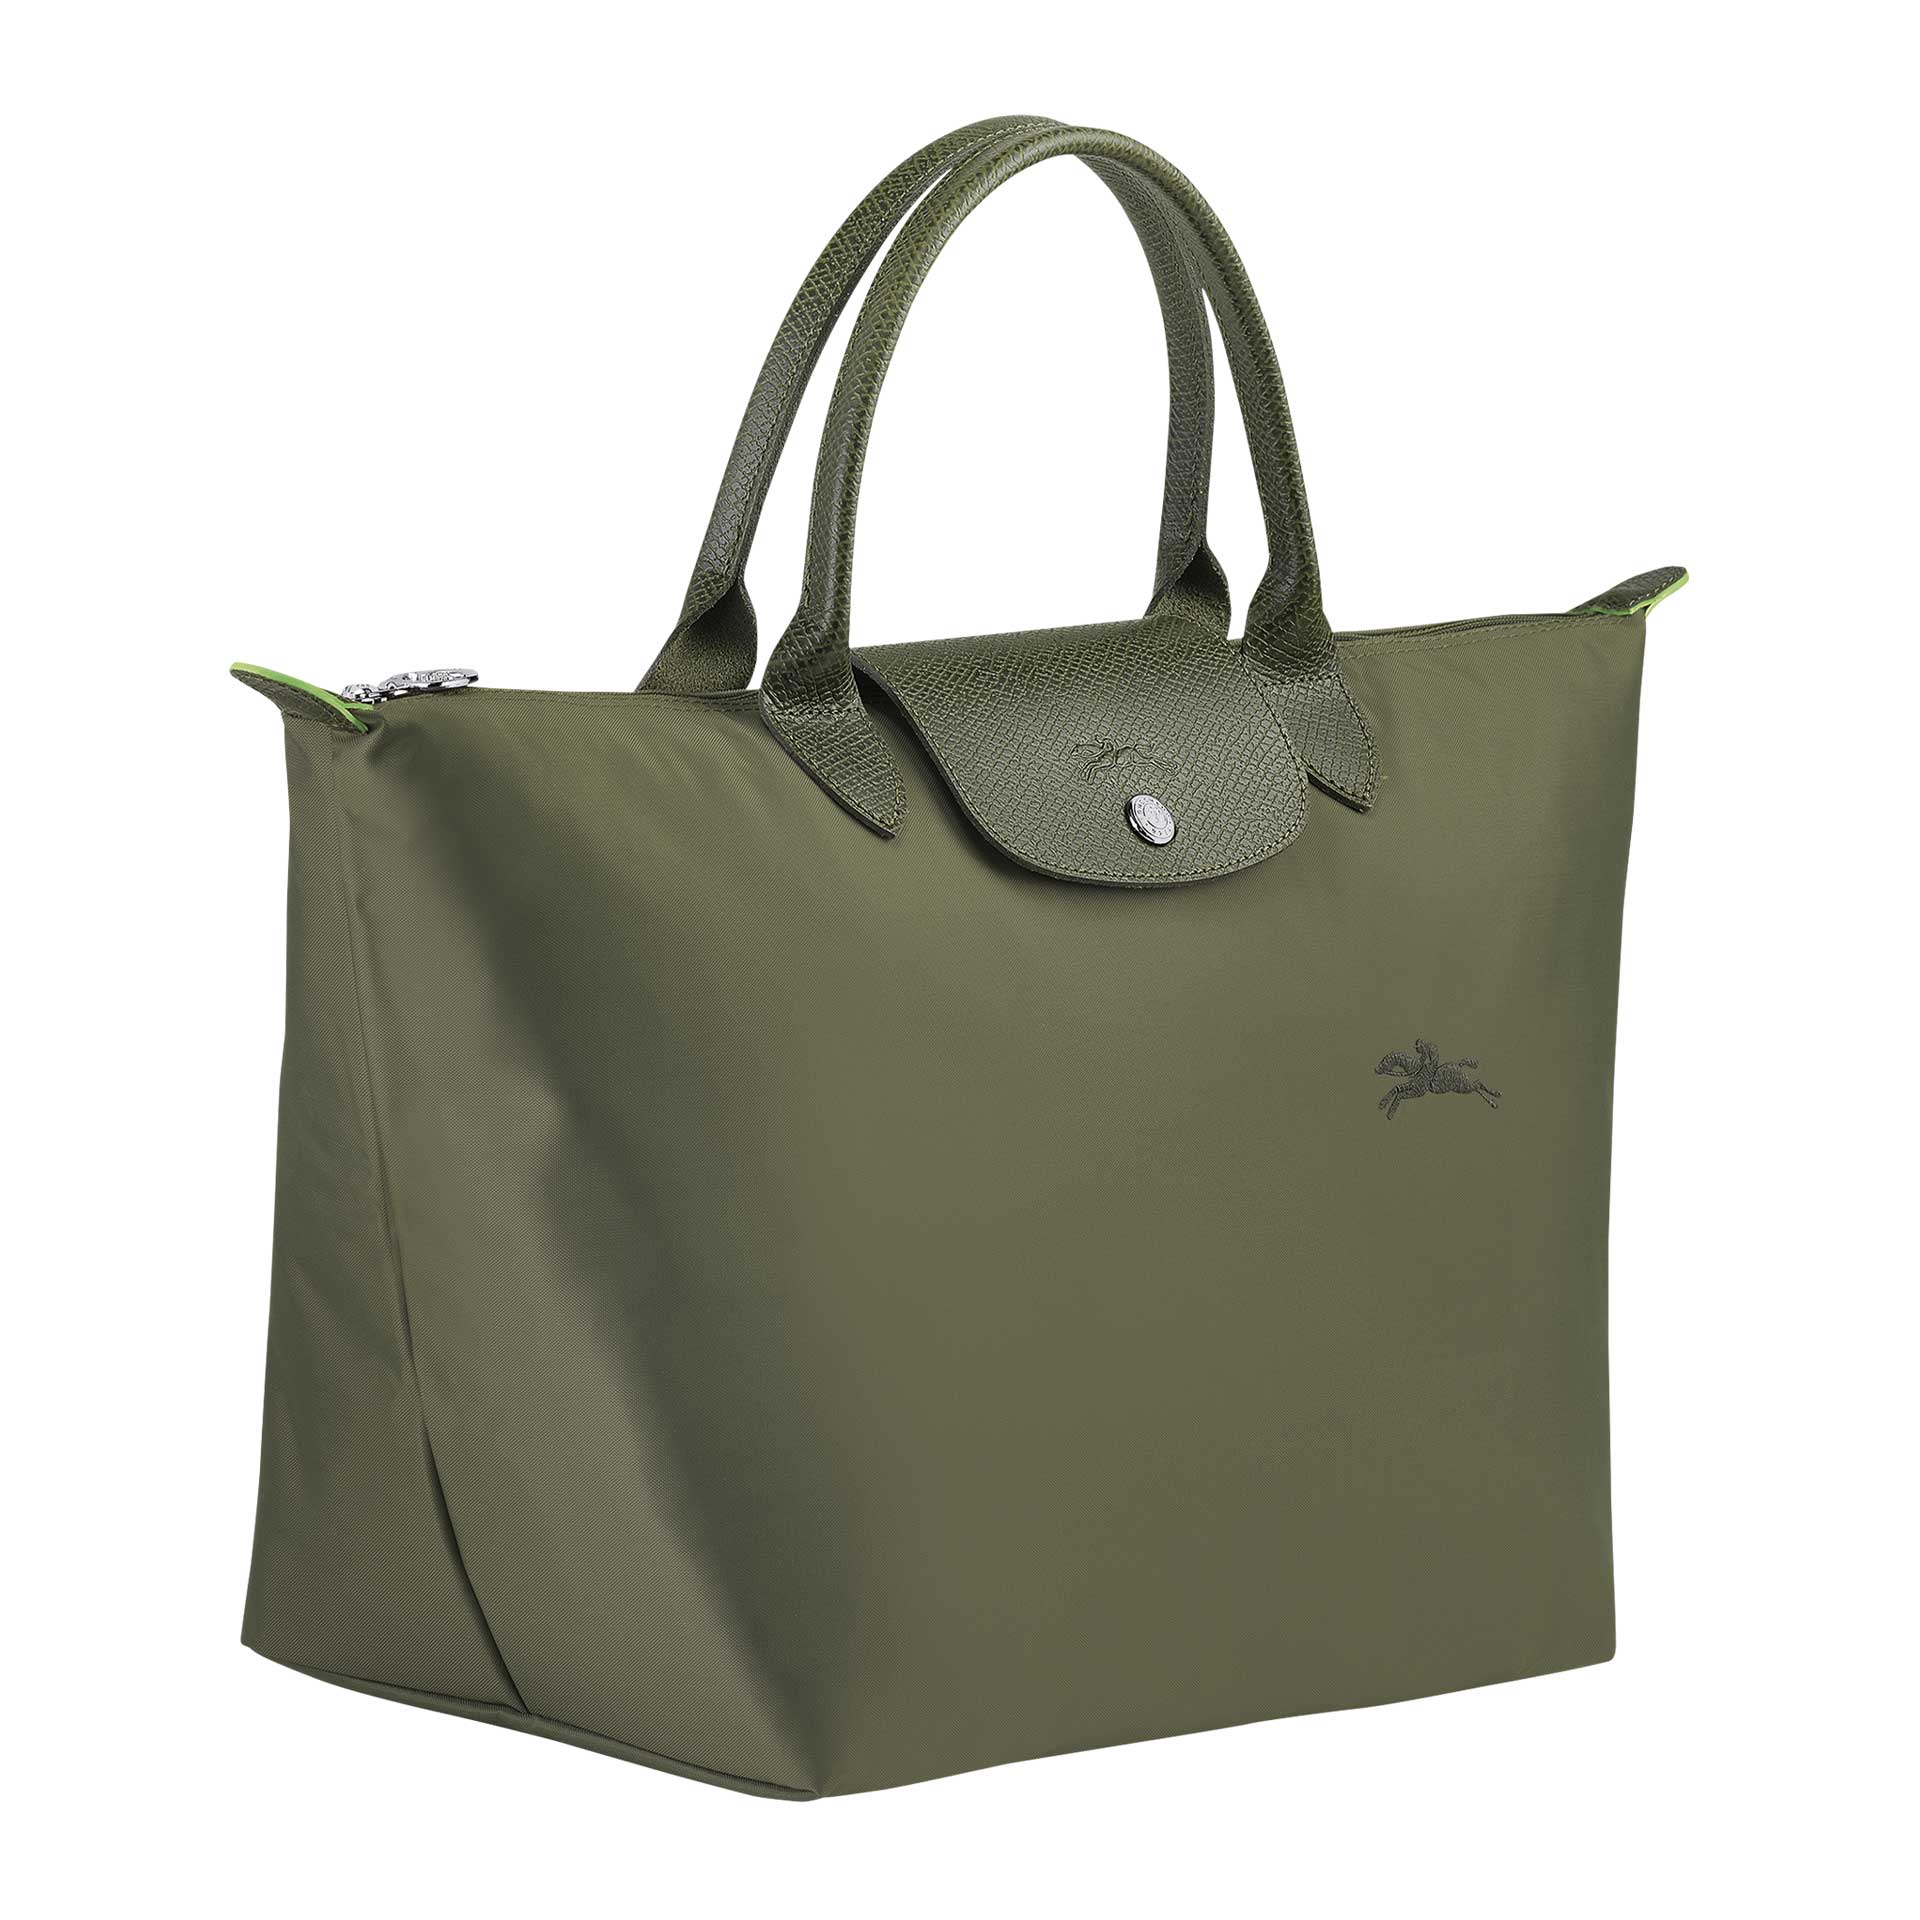 Longchamp Le Pliage Green Handtasche M forest